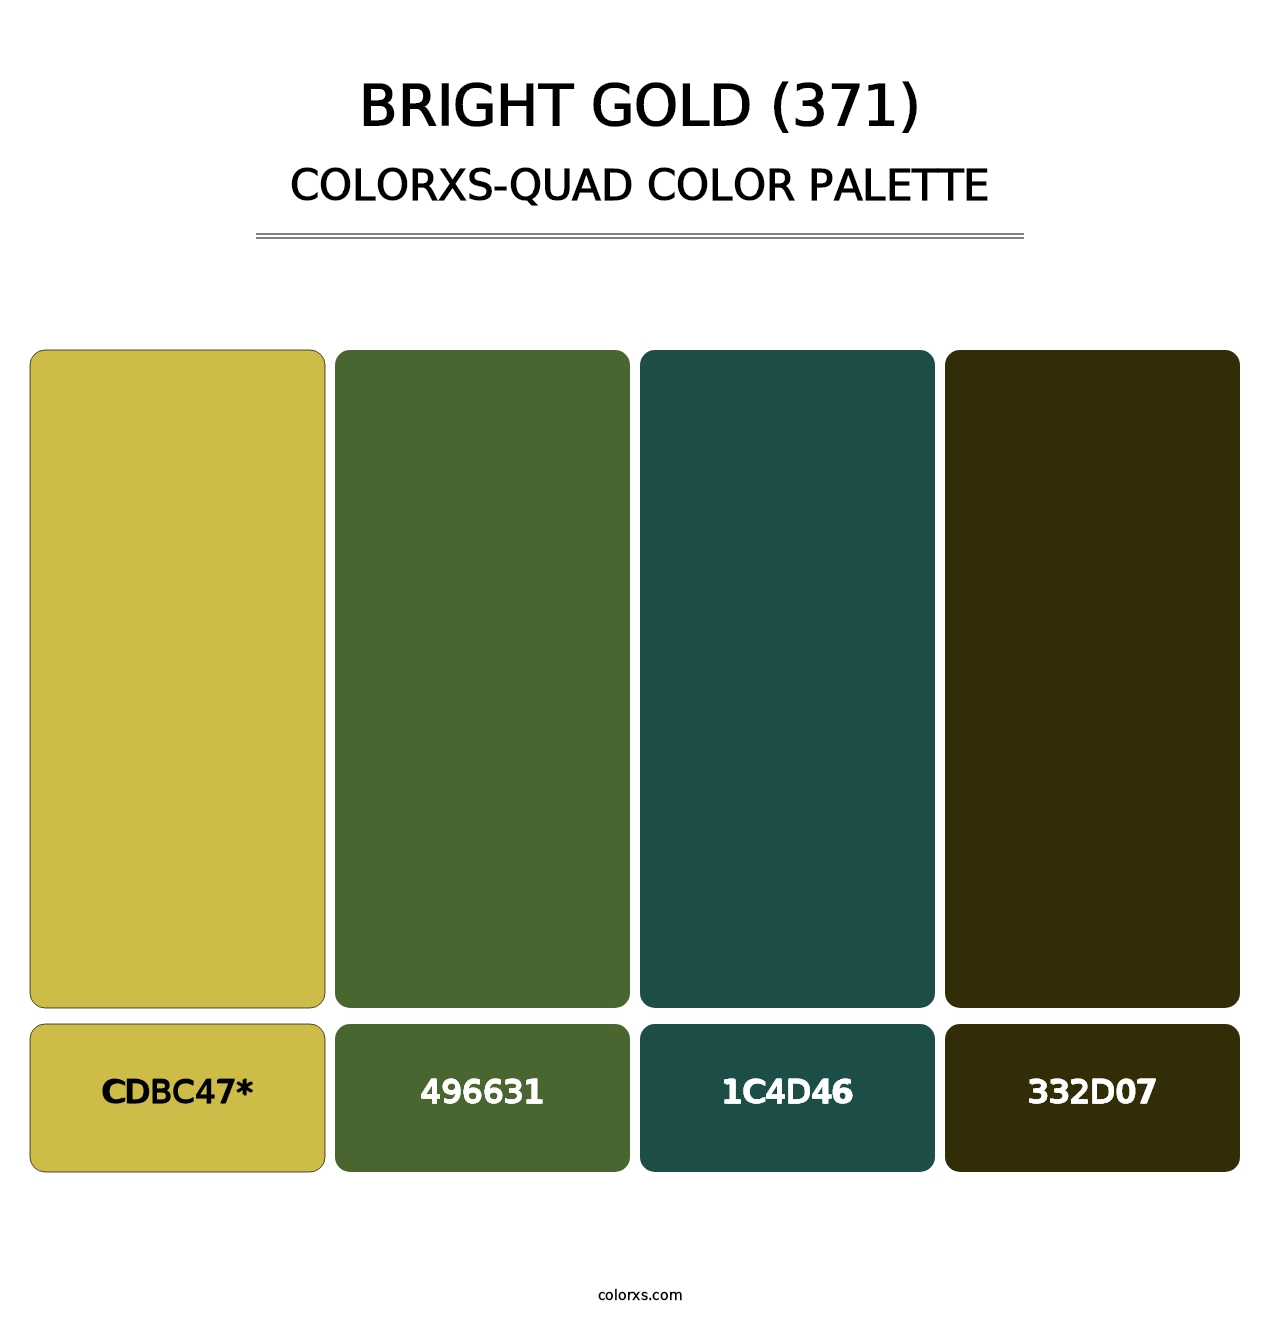 Bright Gold (371) - Colorxs Quad Palette